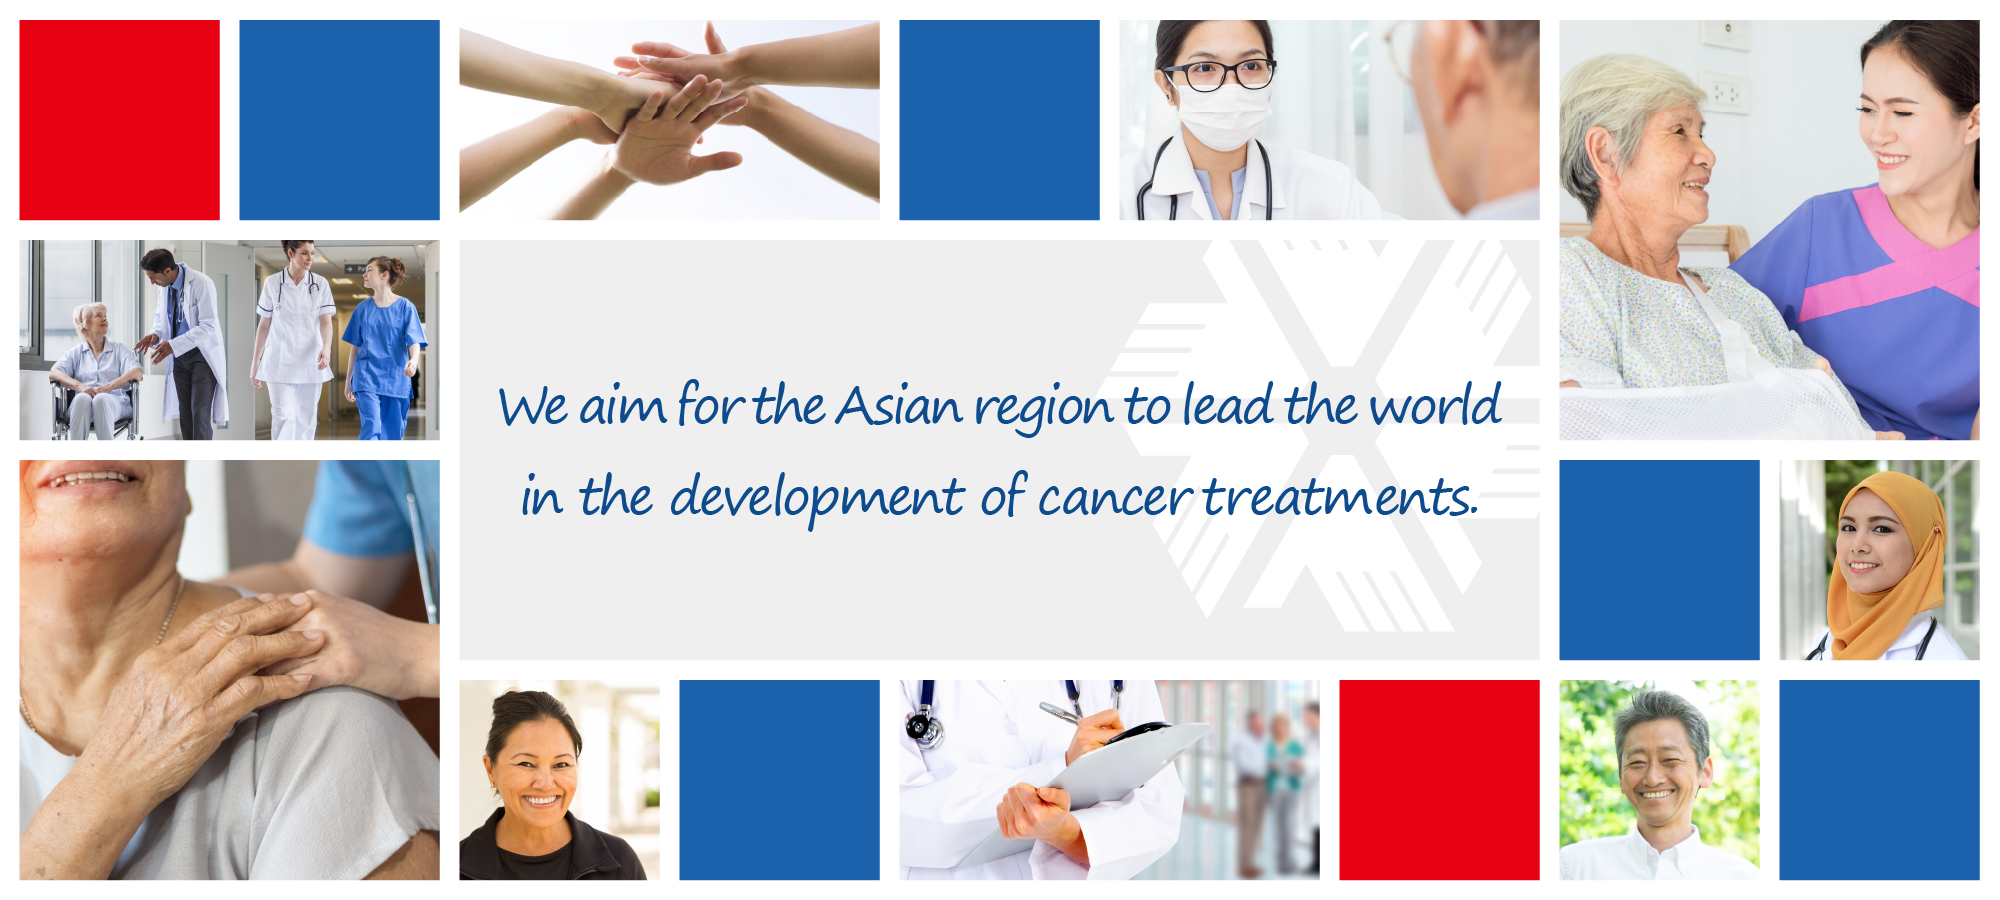 我们的目标是让亚洲地区引领世界癌症治疗的发展。